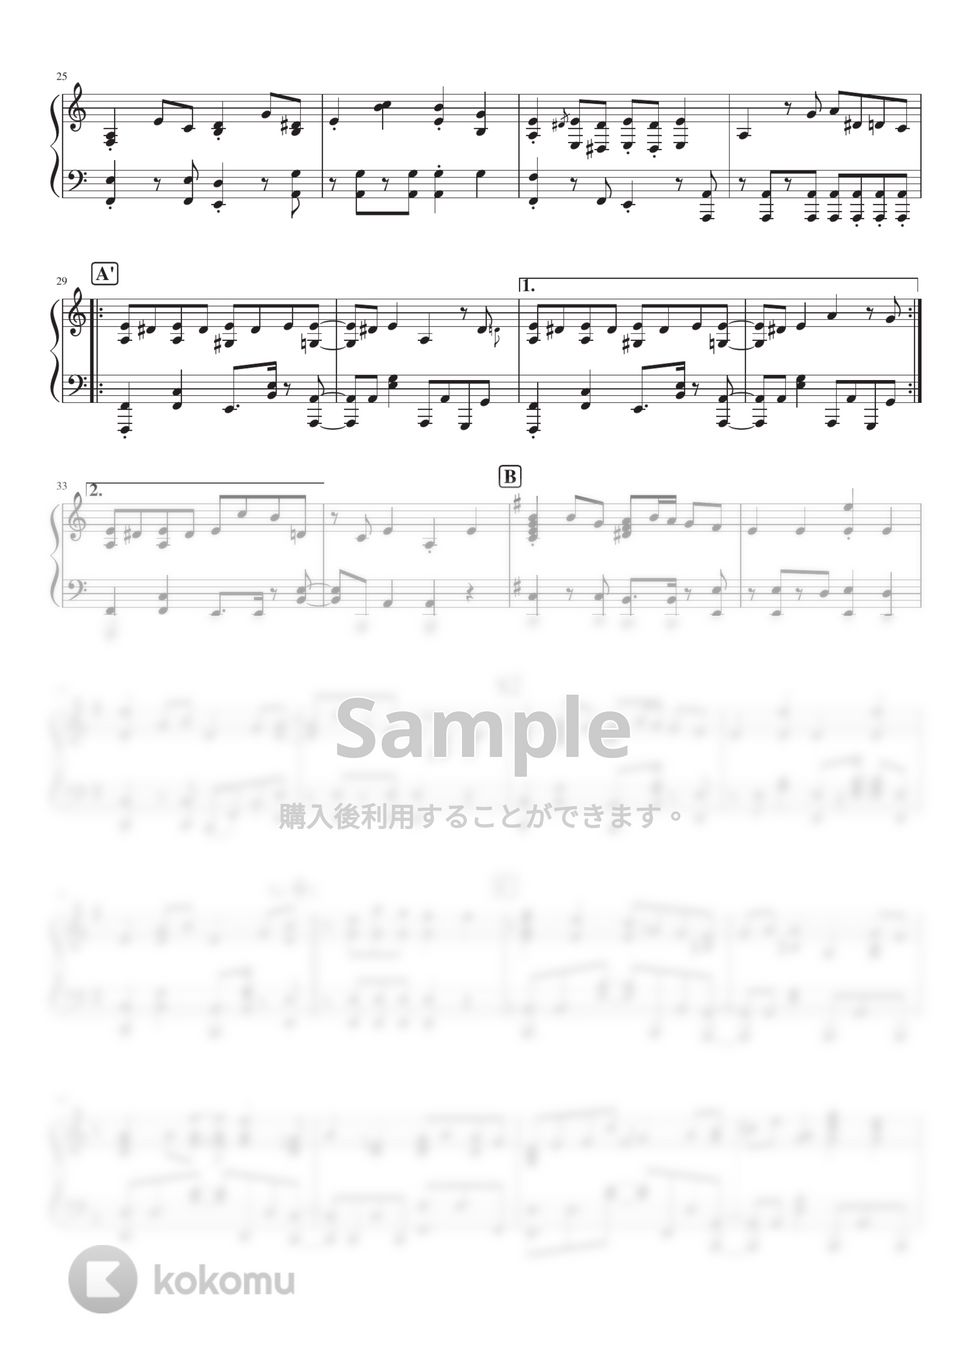 ツミキ - フォニイ (Piano Solo) by 深根 / Fukane